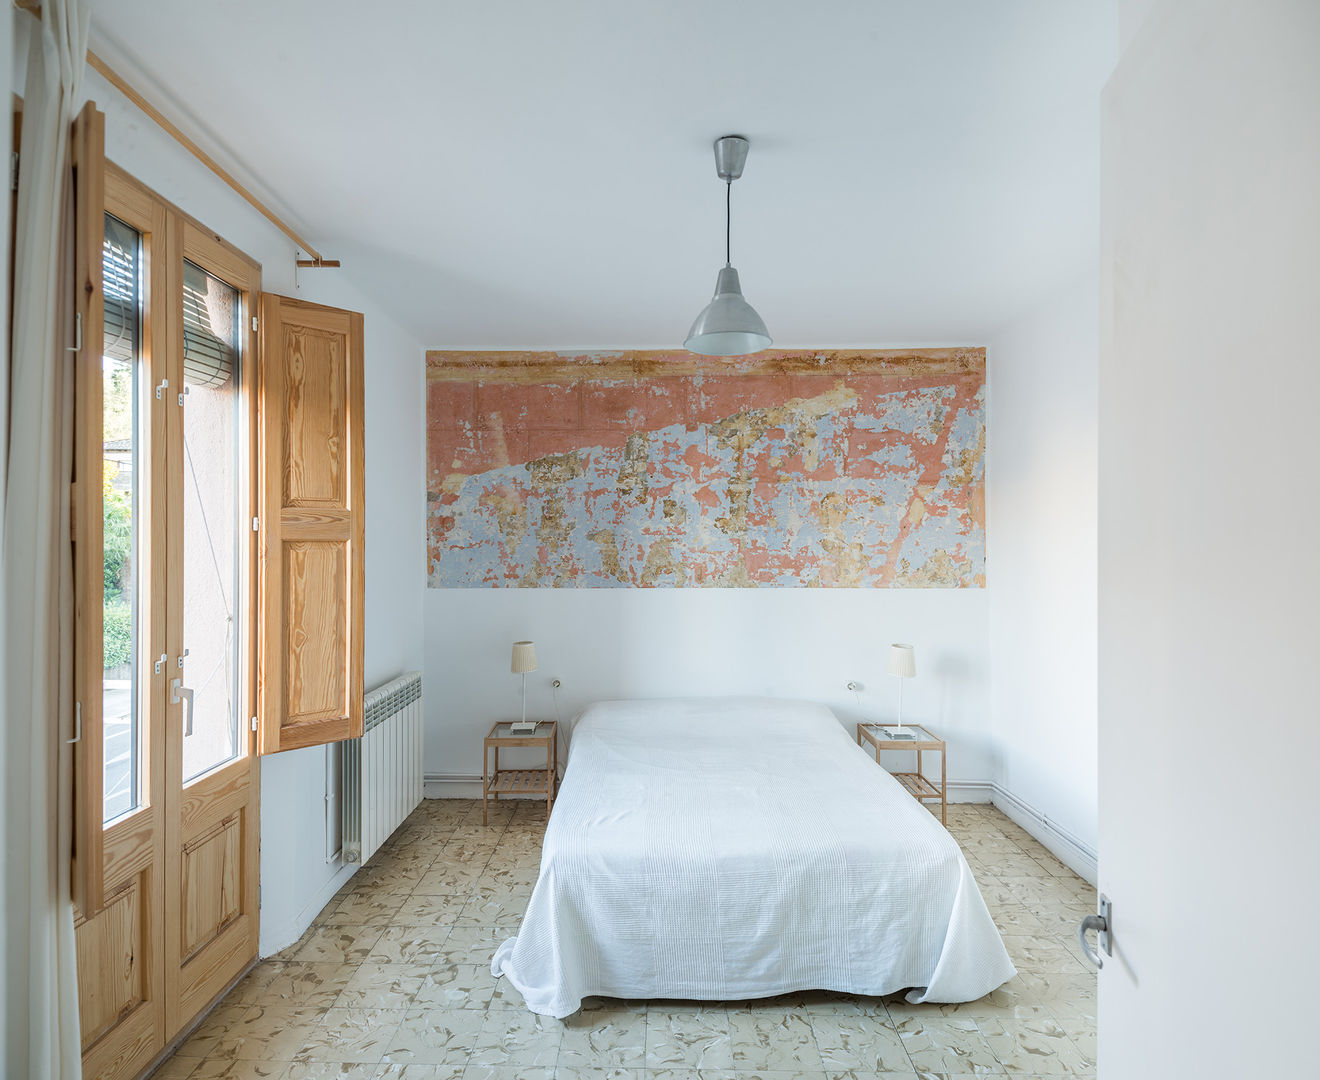 Dormitori undos arquitectura cooperativa Dormitorios de estilo minimalista Madera Acabado en madera pintura, color, textura, dormitori, reforma, habitatge